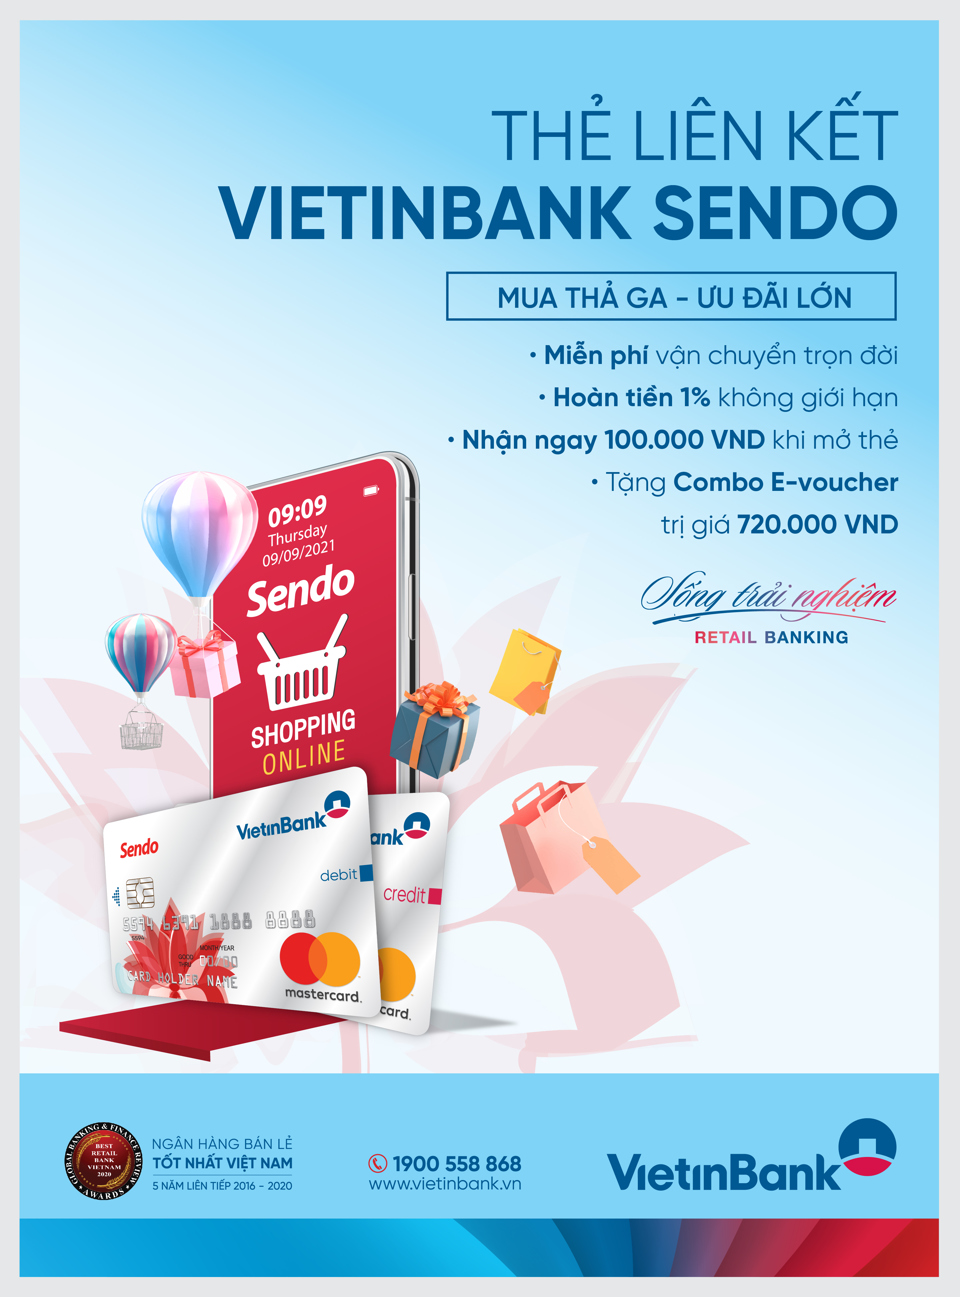 Ra mắt Thẻ đồng thương hiệu MasterCard Platinum VietinBank Sendo: Đặc quyền ưu đãi không giới hạn - Ảnh 1